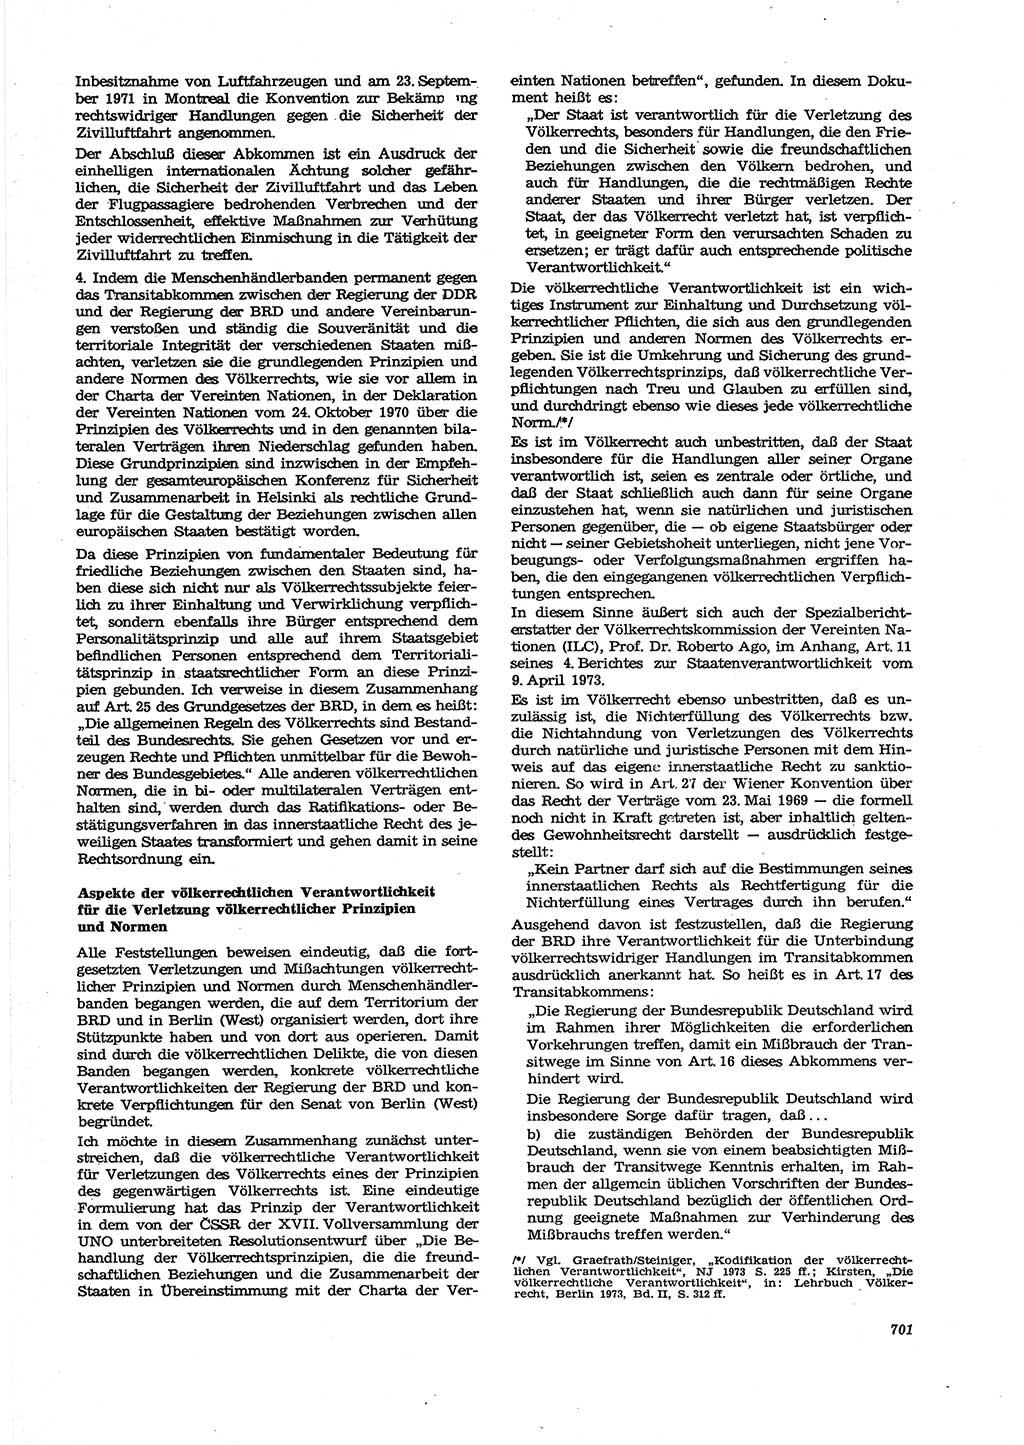 Neue Justiz (NJ), Zeitschrift für Recht und Rechtswissenschaft [Deutsche Demokratische Republik (DDR)], 27. Jahrgang 1973, Seite 701 (NJ DDR 1973, S. 701)